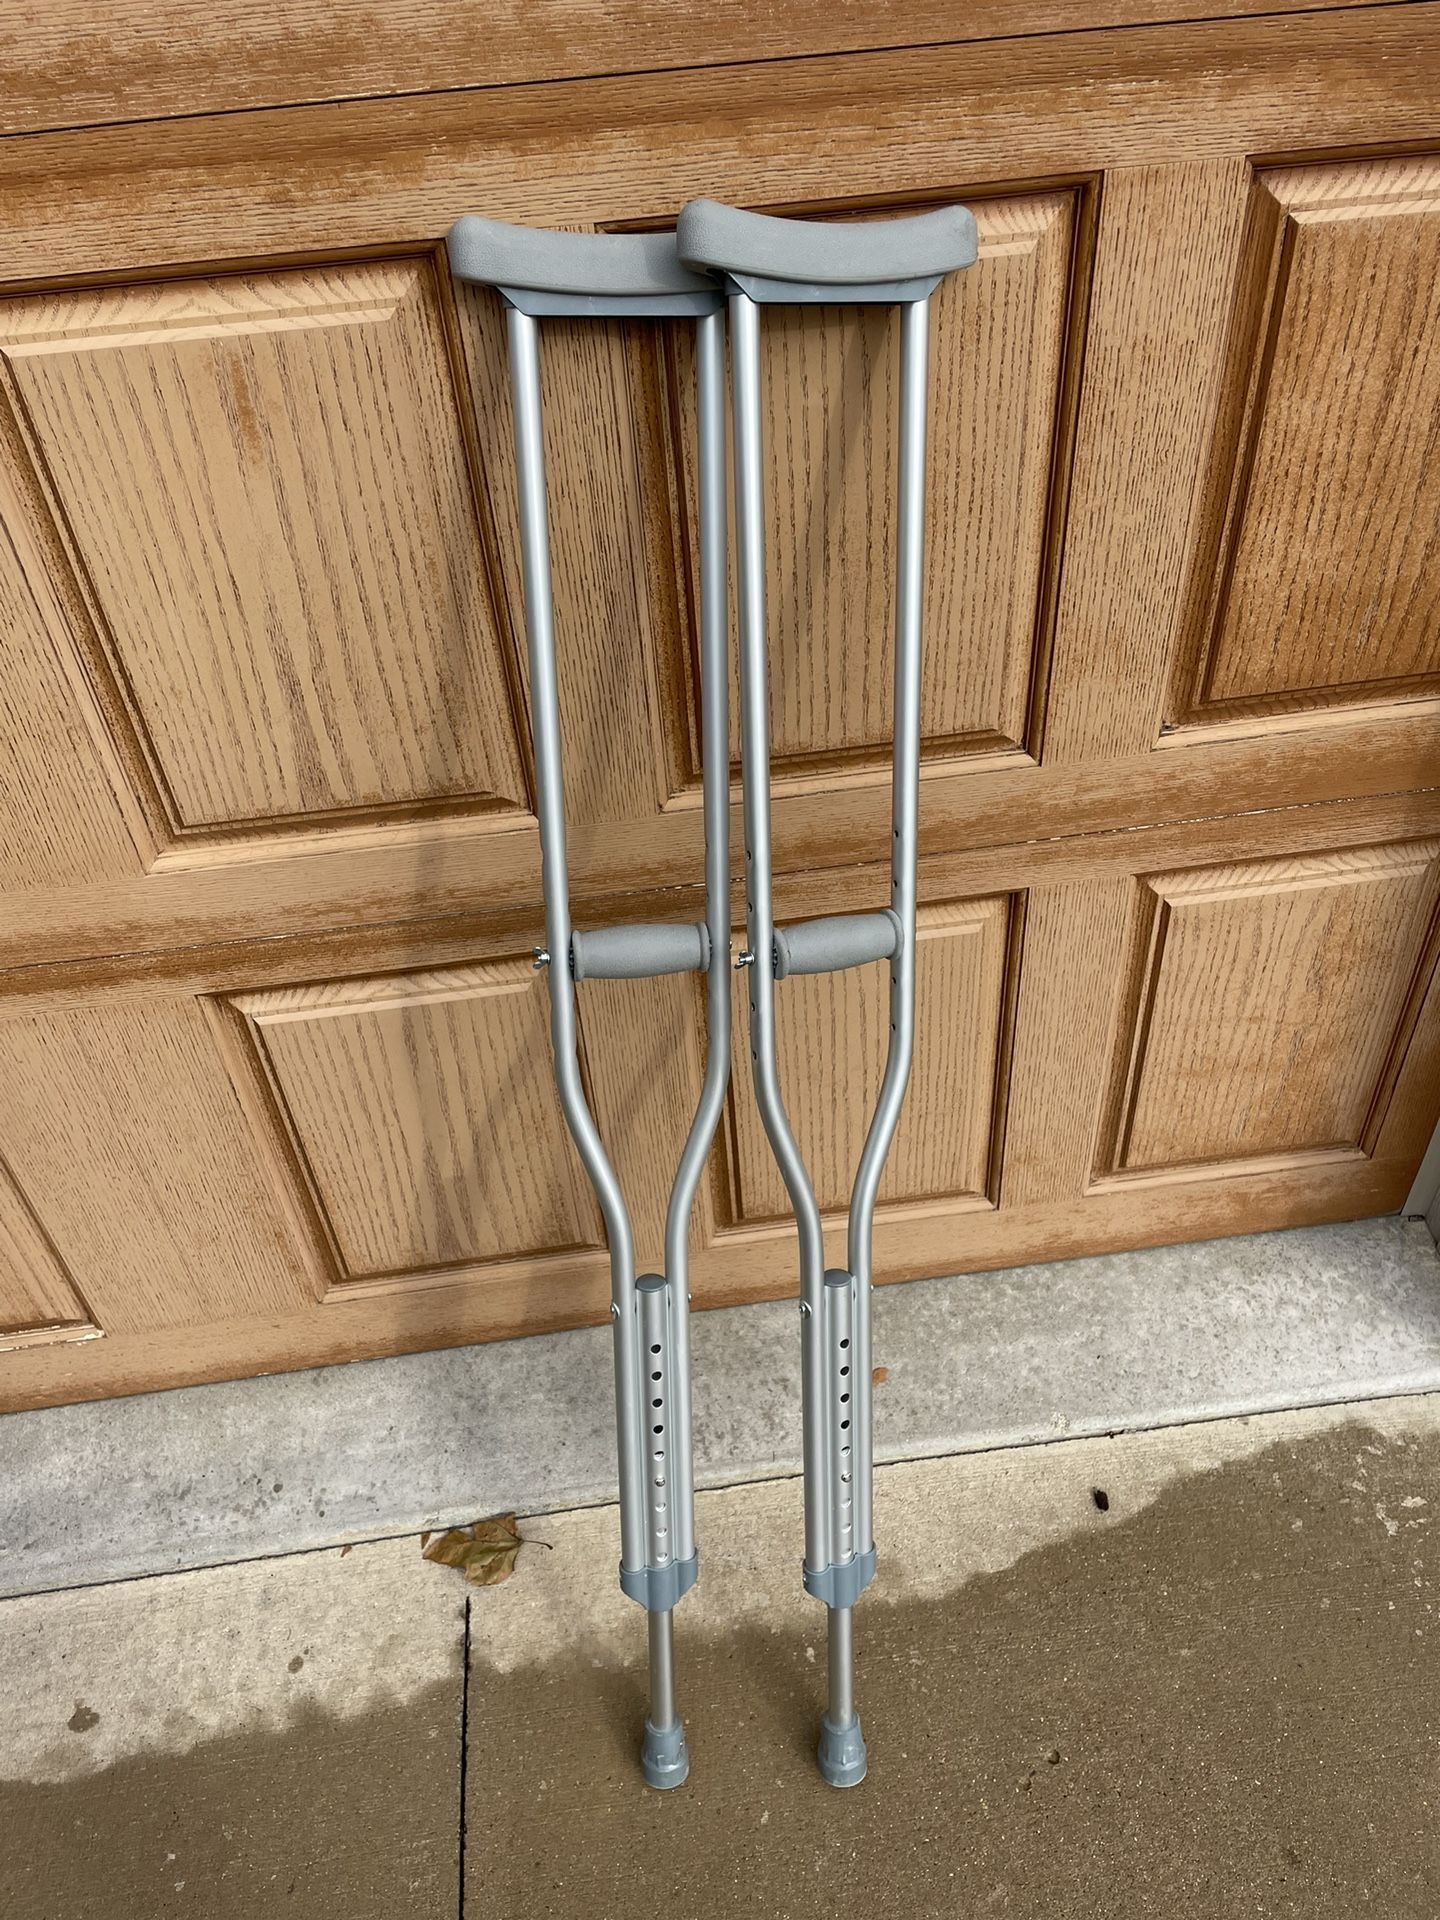 Crutches 5’2-5’10